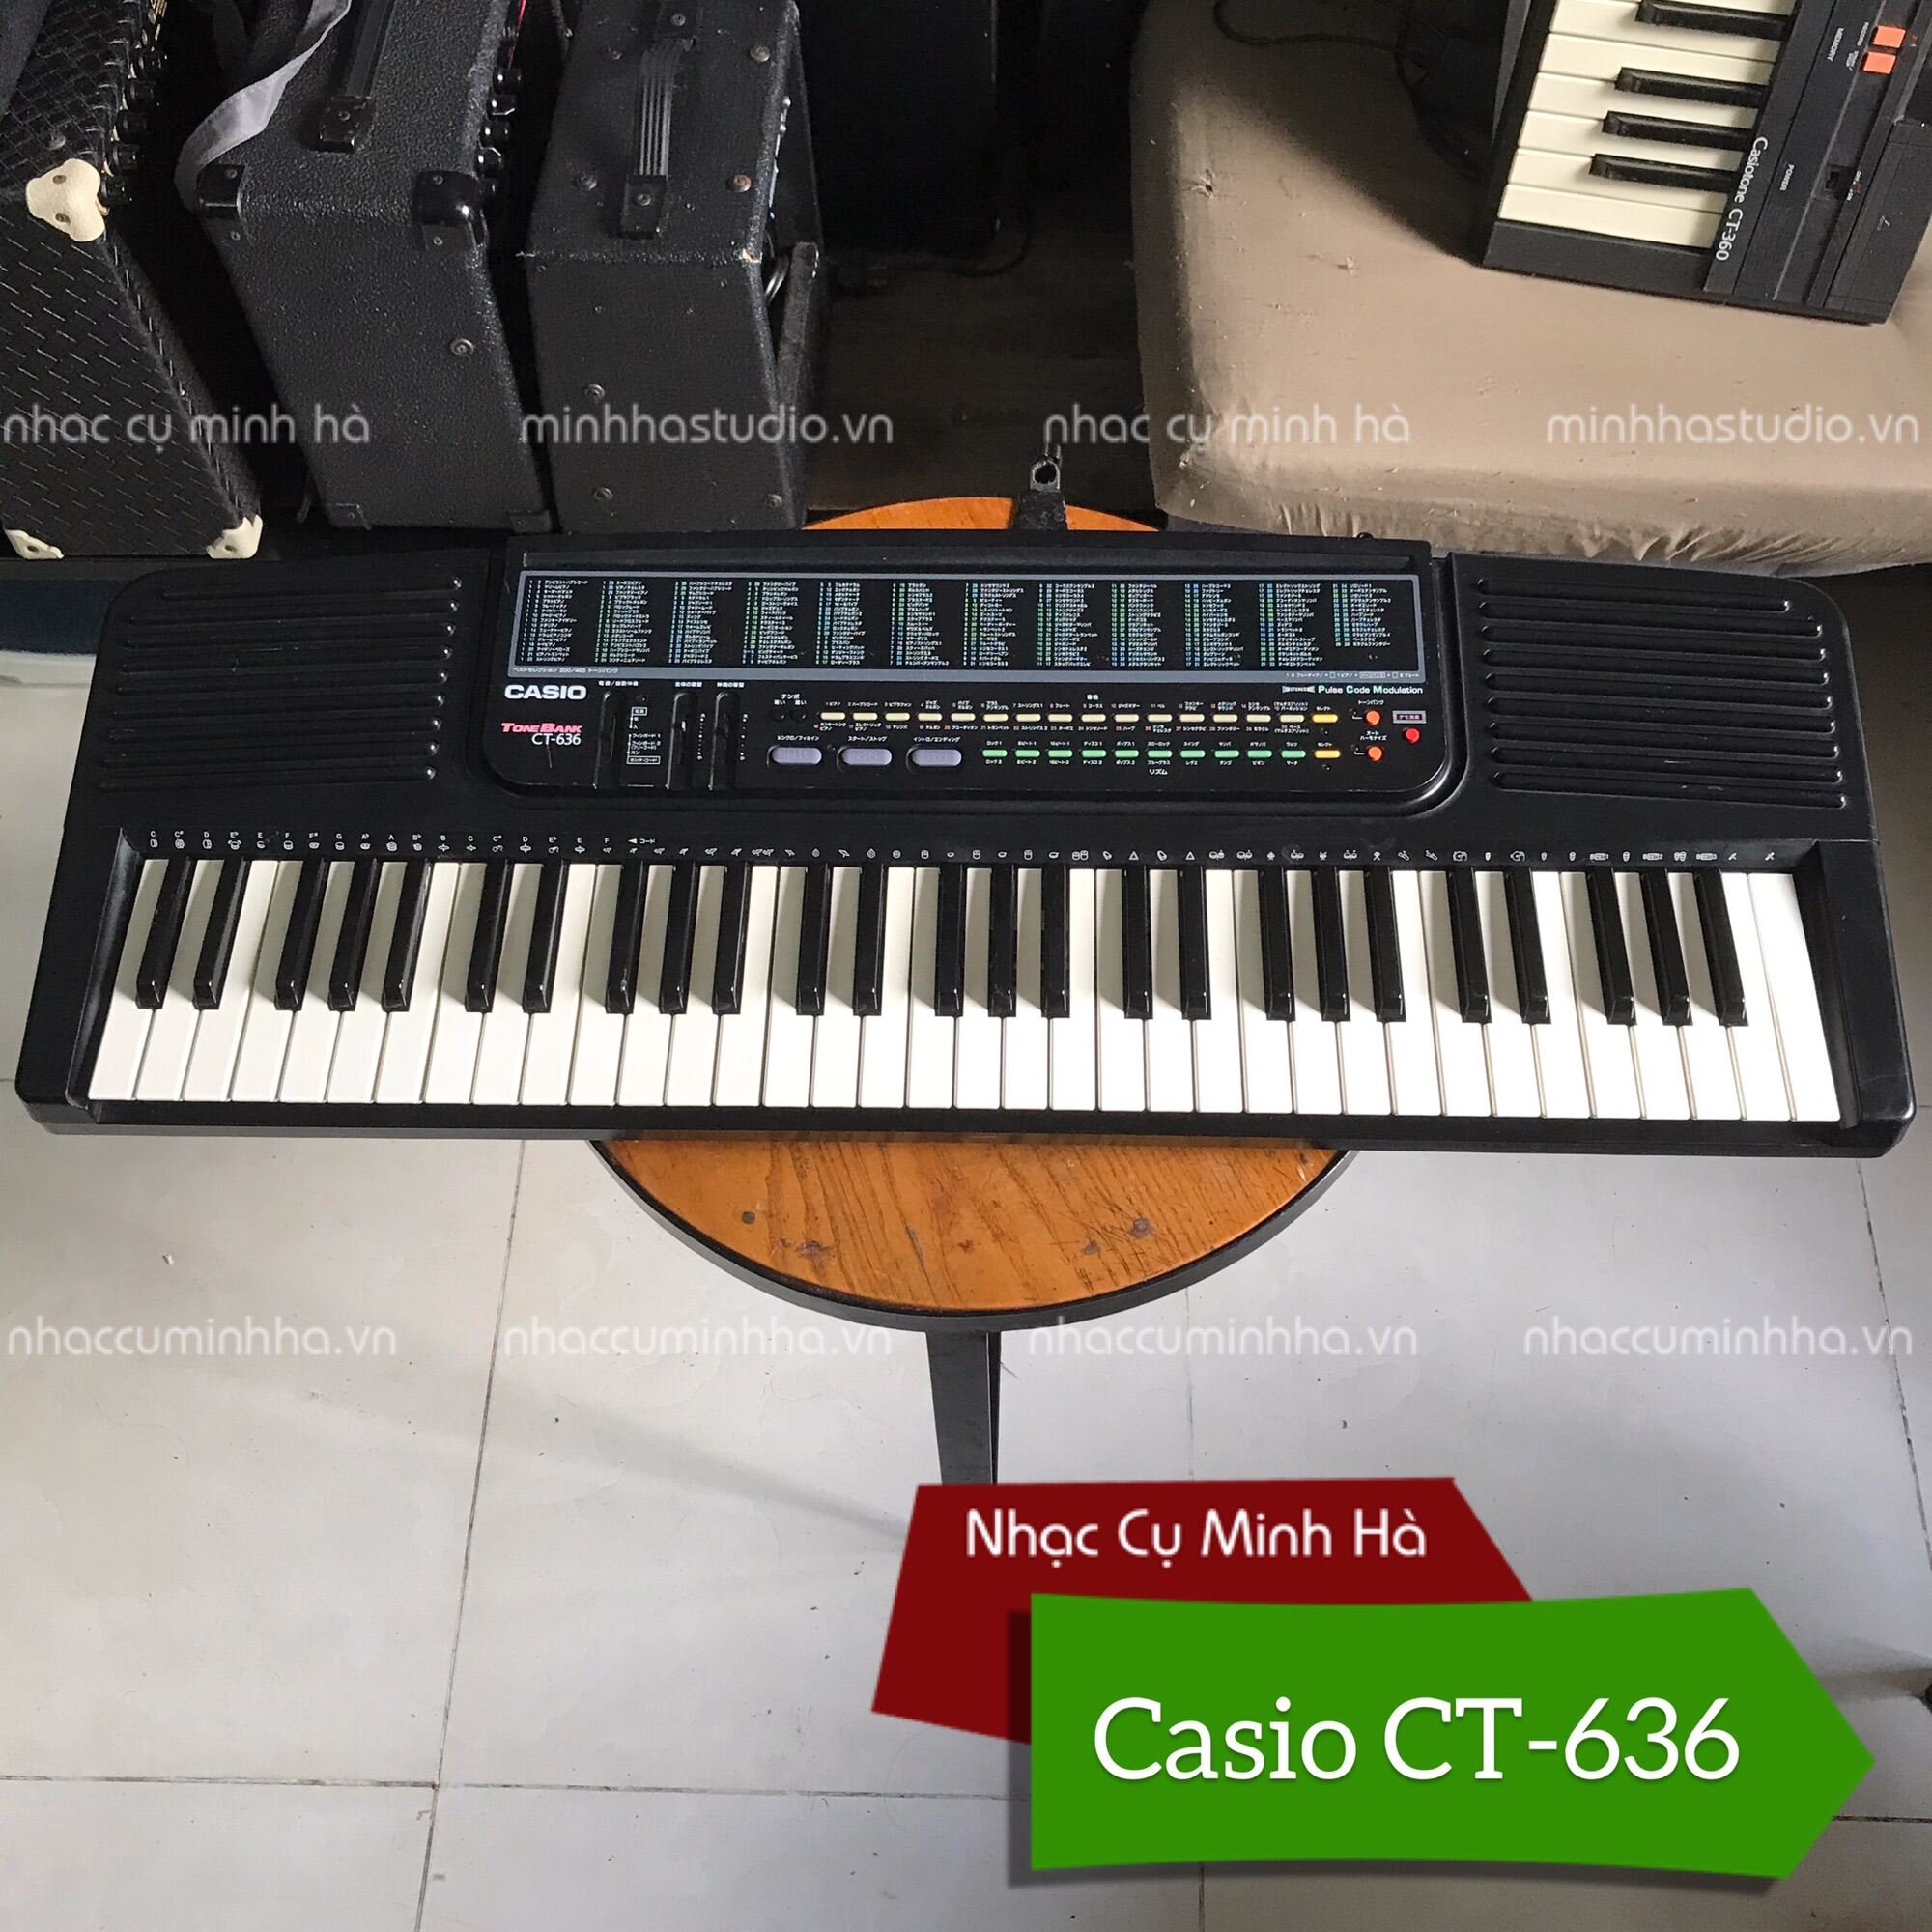 Đàn Organ Casio CT-636. Đàn đã qua sử dụng, hàng Casio chính hãng, chạy hoàn hảo